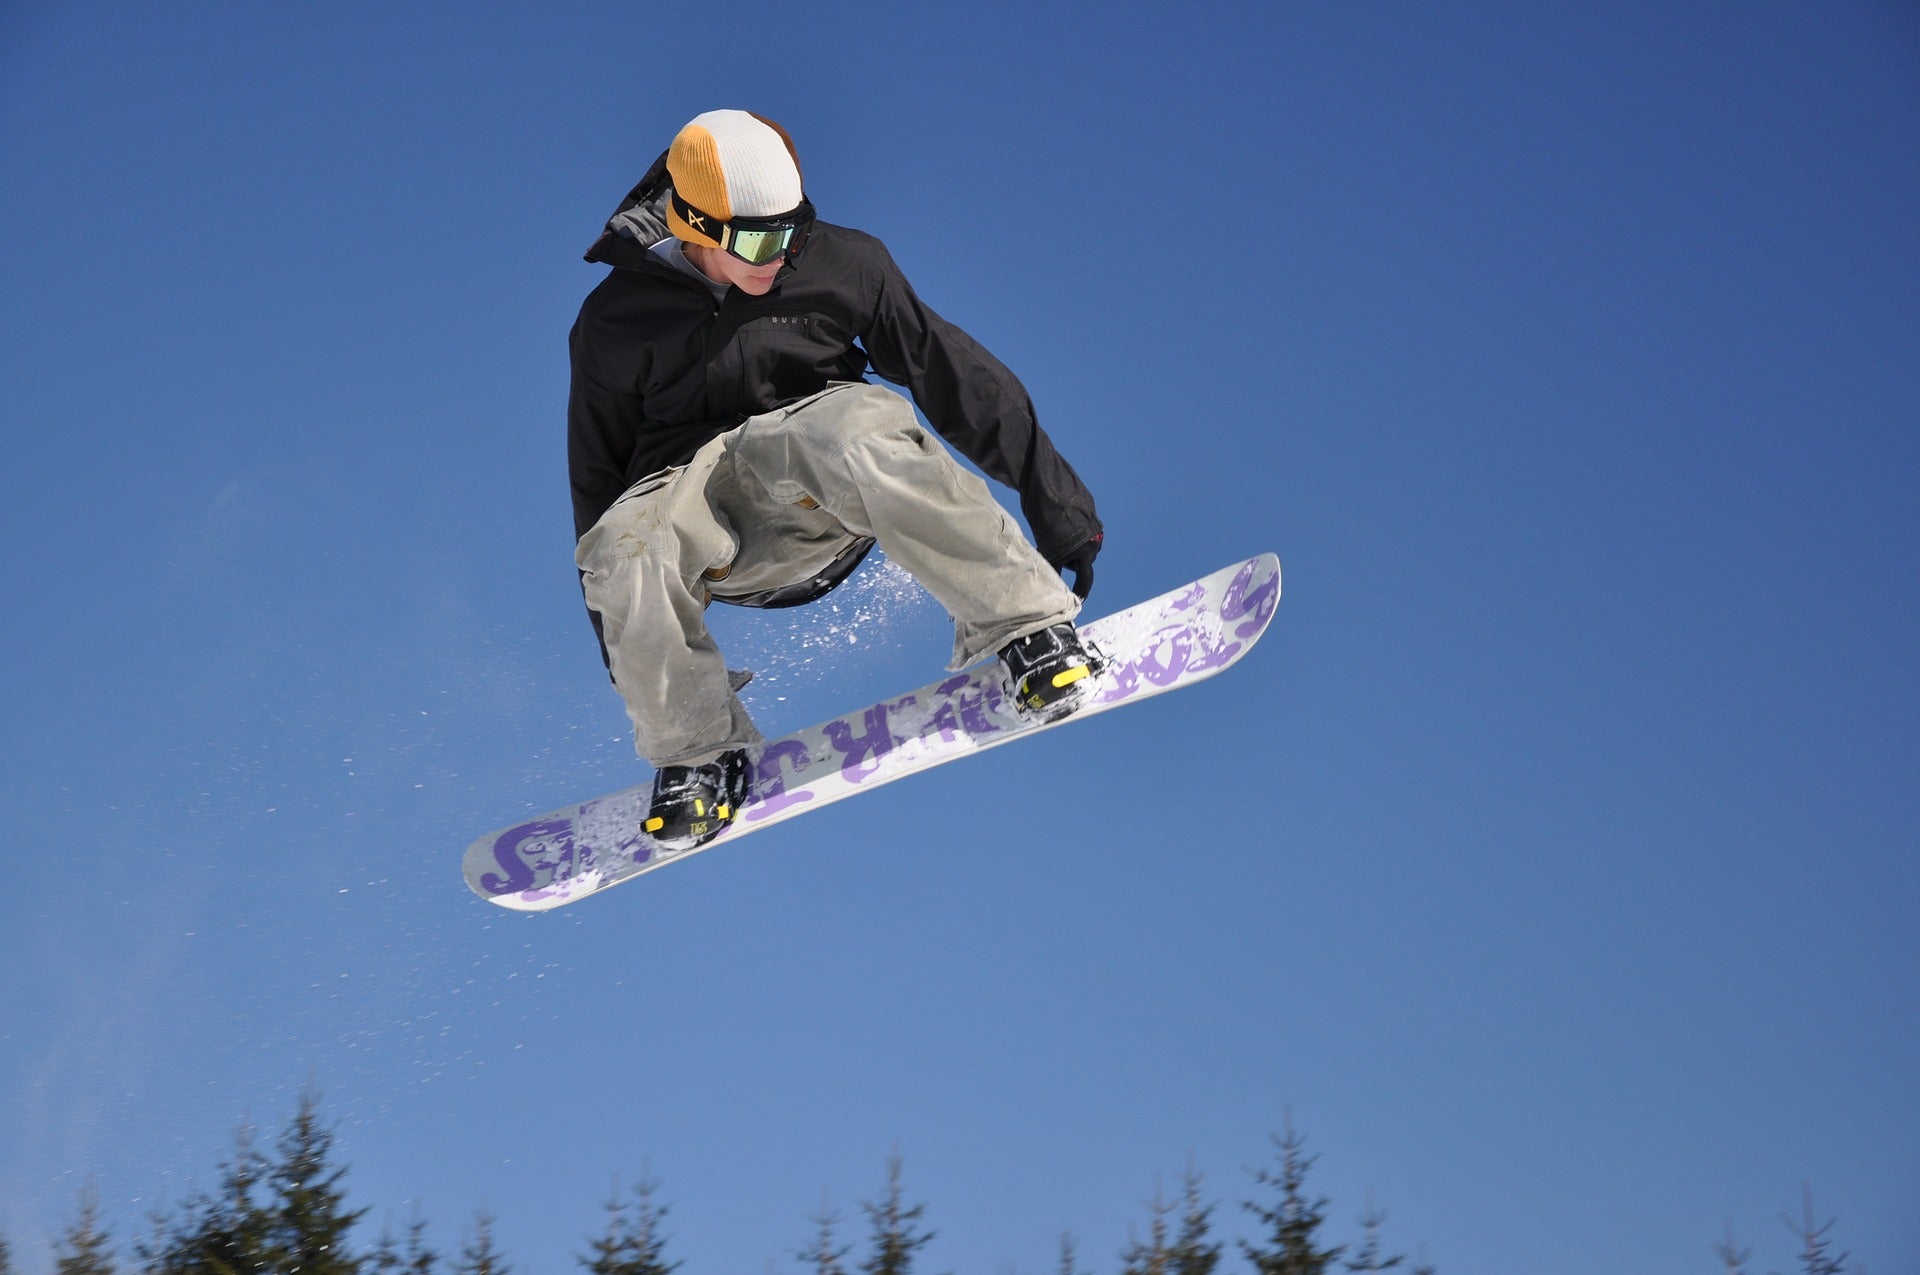 Ski's of snowboards? De juiste voor beginners – BERGLUST